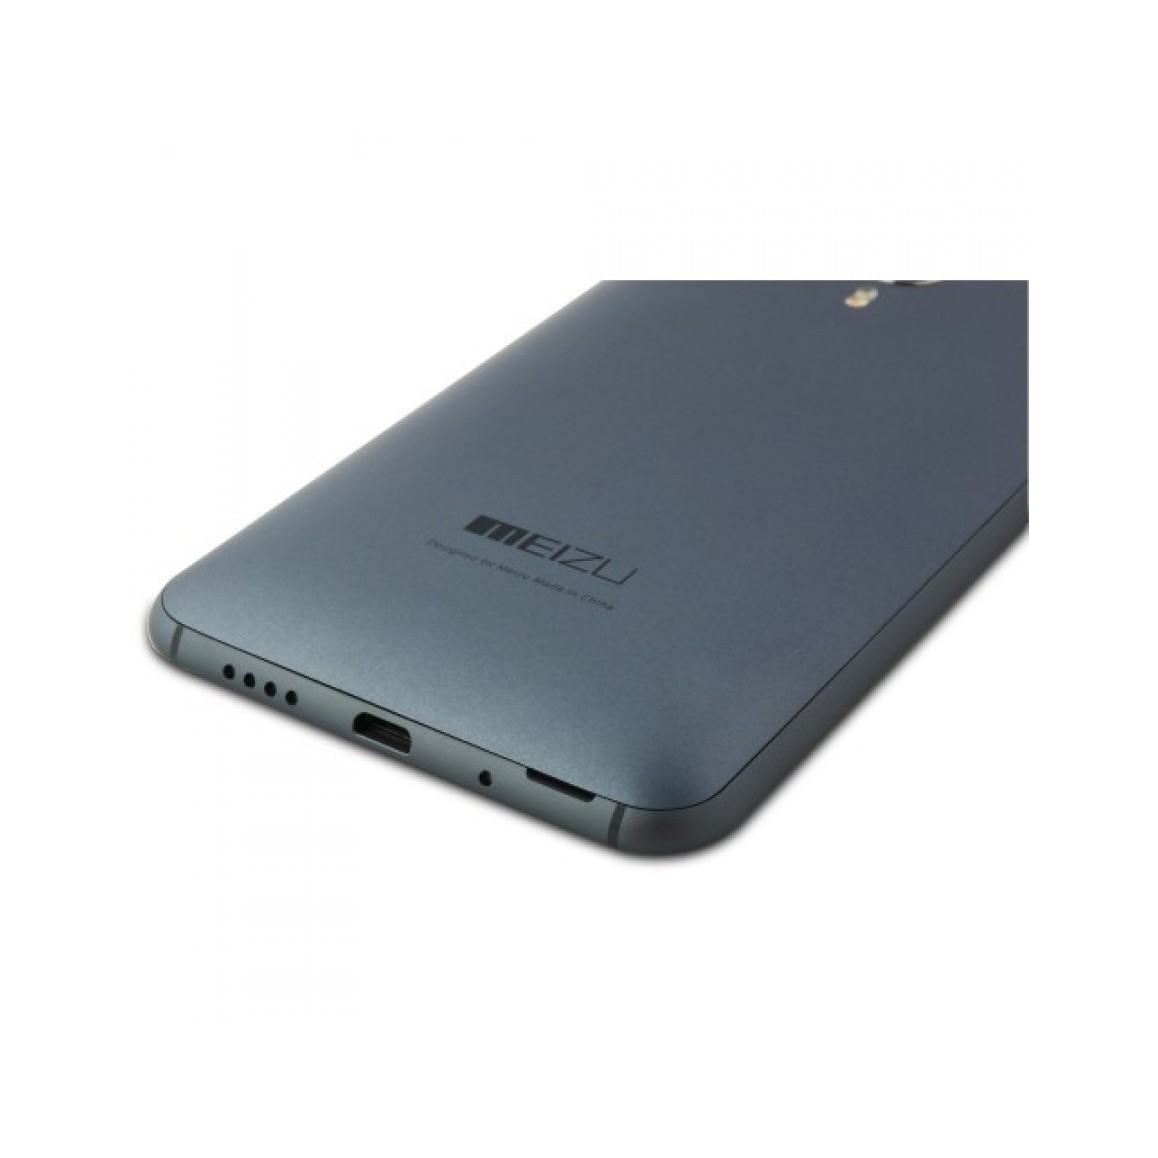 Мобильный телефон Meizu MX4 Pro 32GB